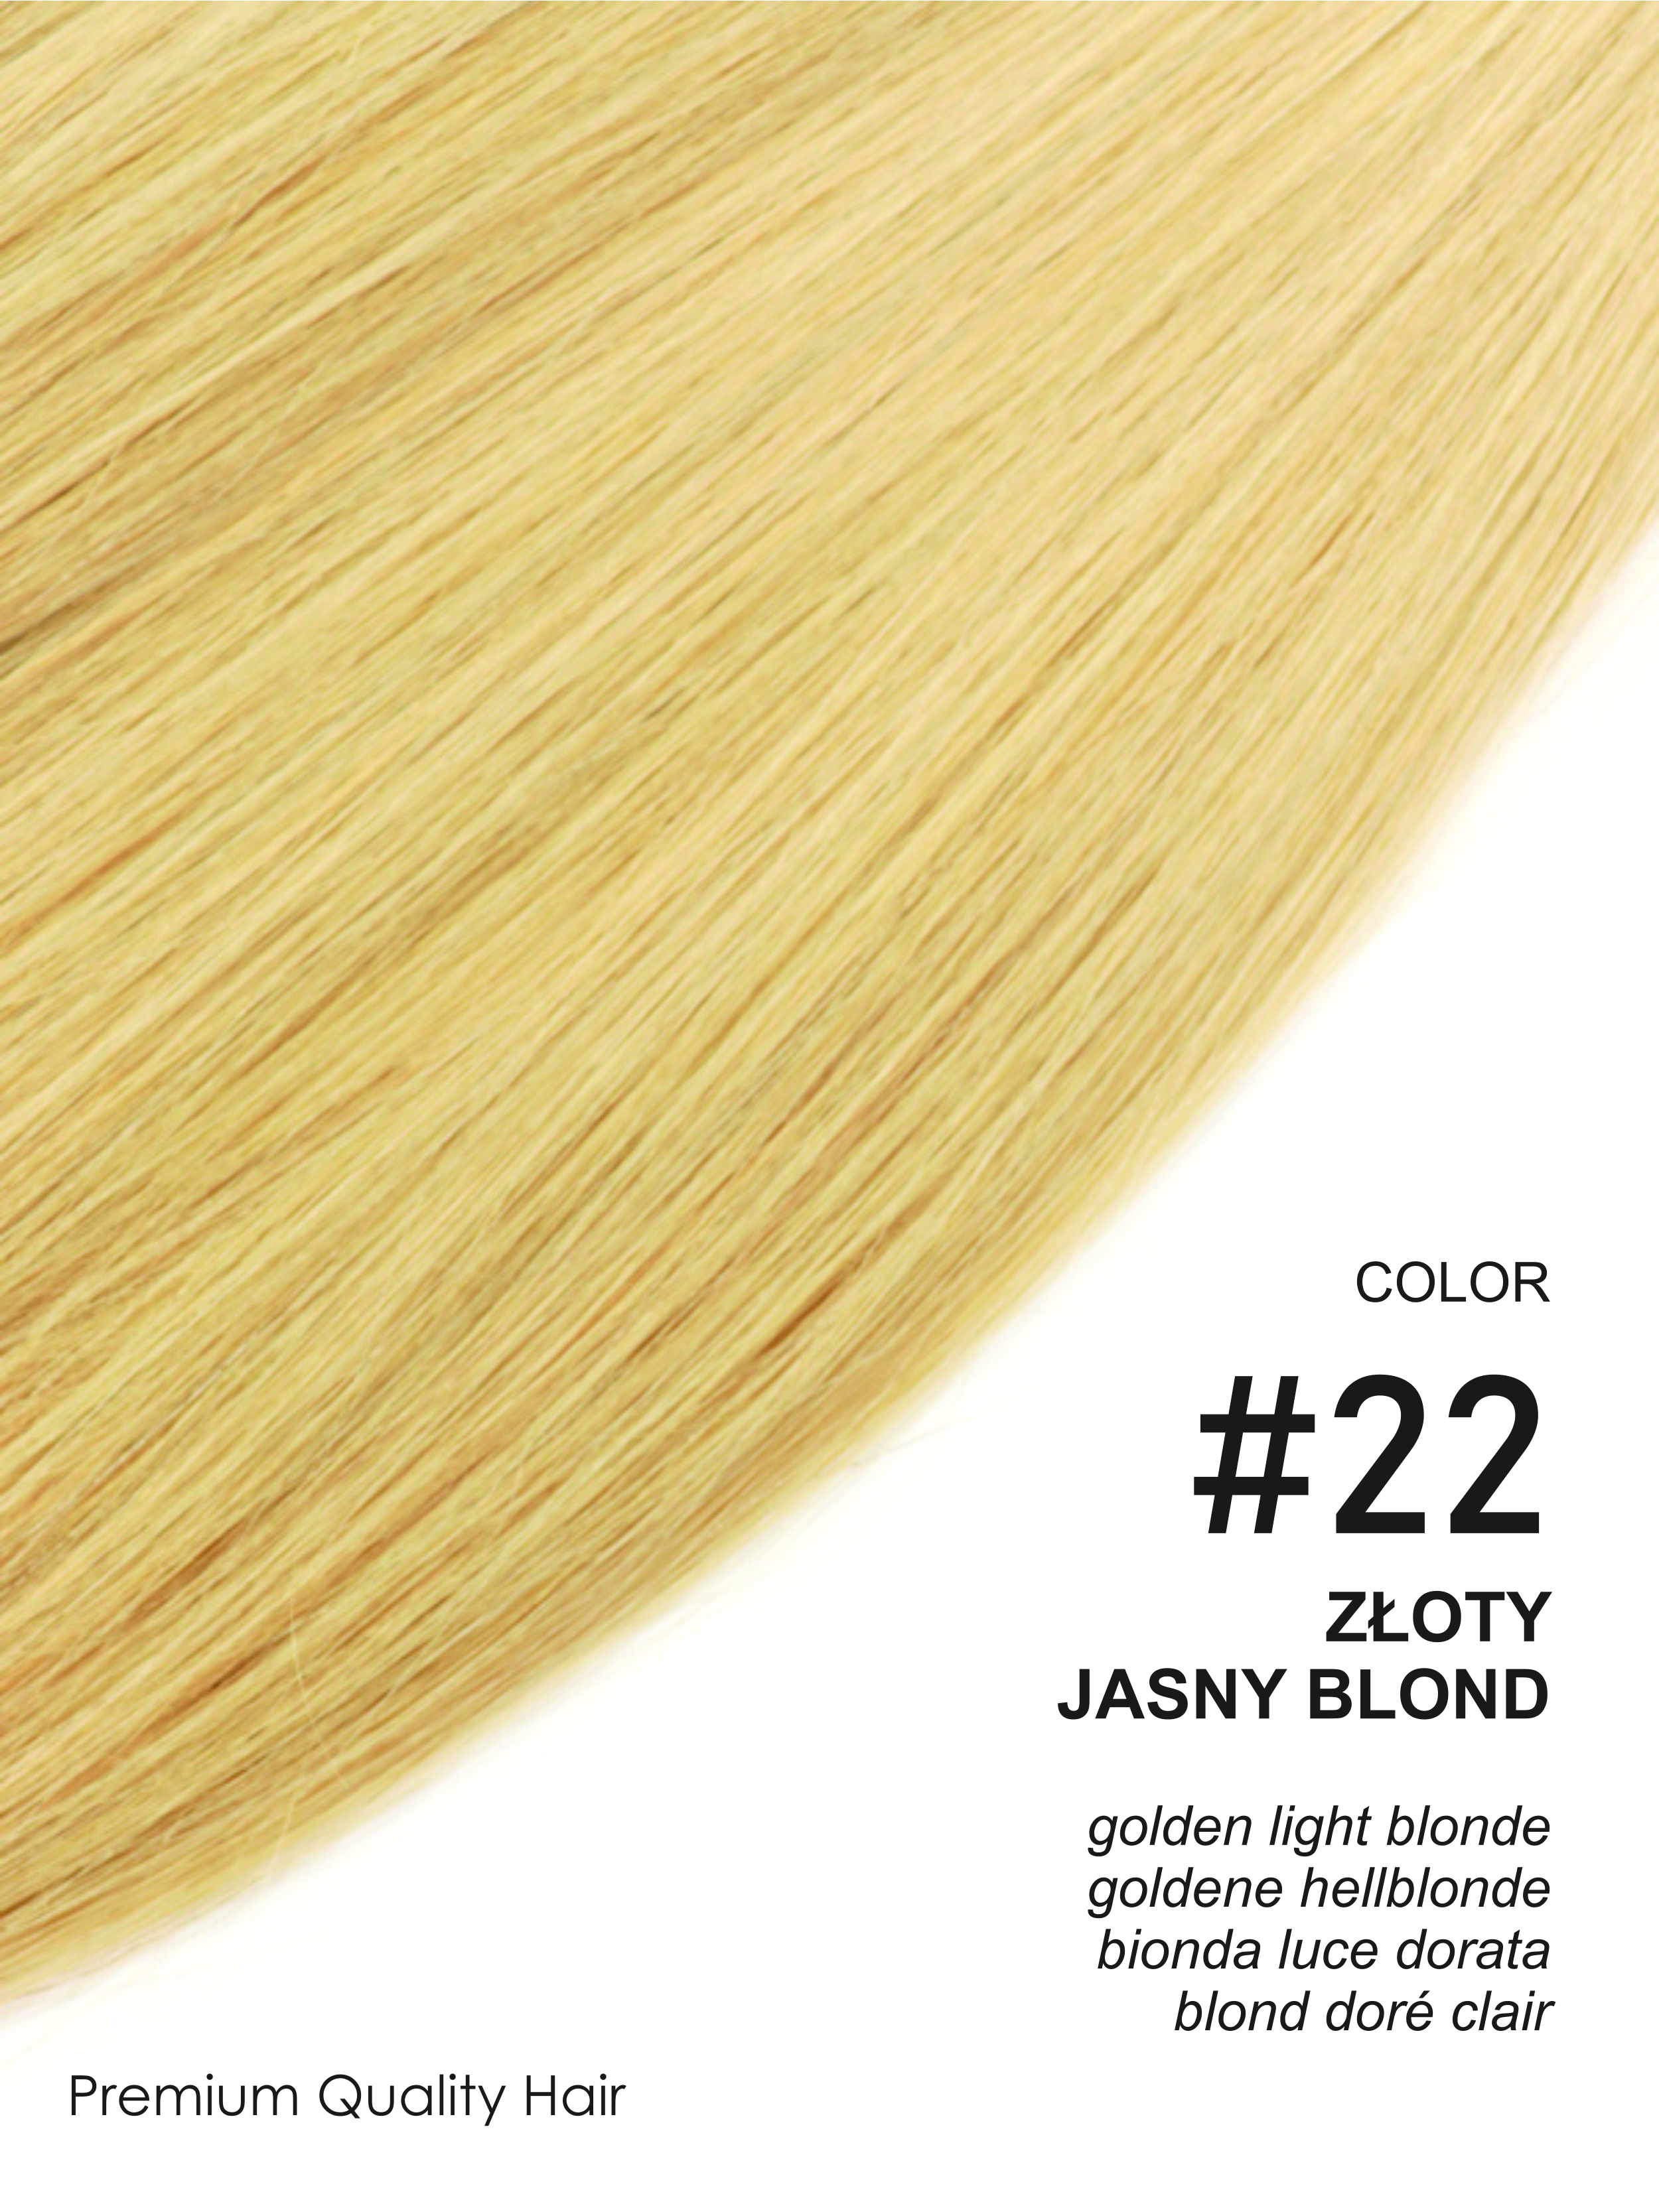 Beauty for You Slovanské vlasy - rovné prameny s plochým hrotem, vlasy 51 cm, pro keratinovou nebo ultrazvukovou metodu